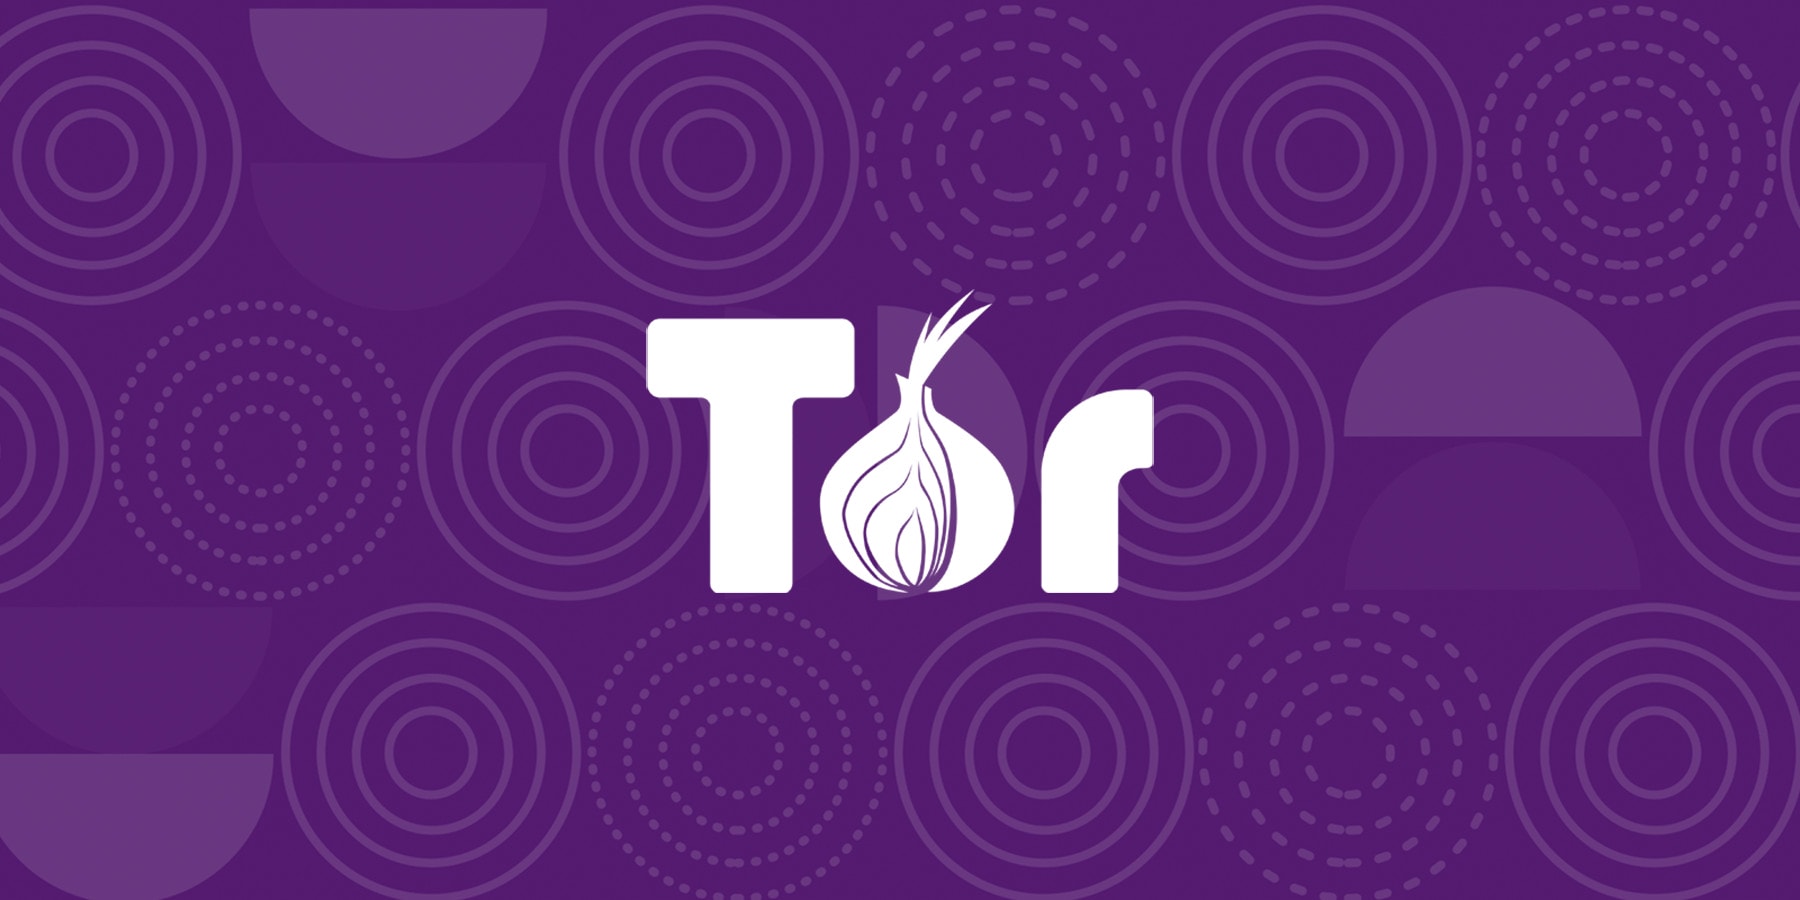 Tor s'arme d'un Proof of Work (PoW) pour lutter contre les attaques DoS